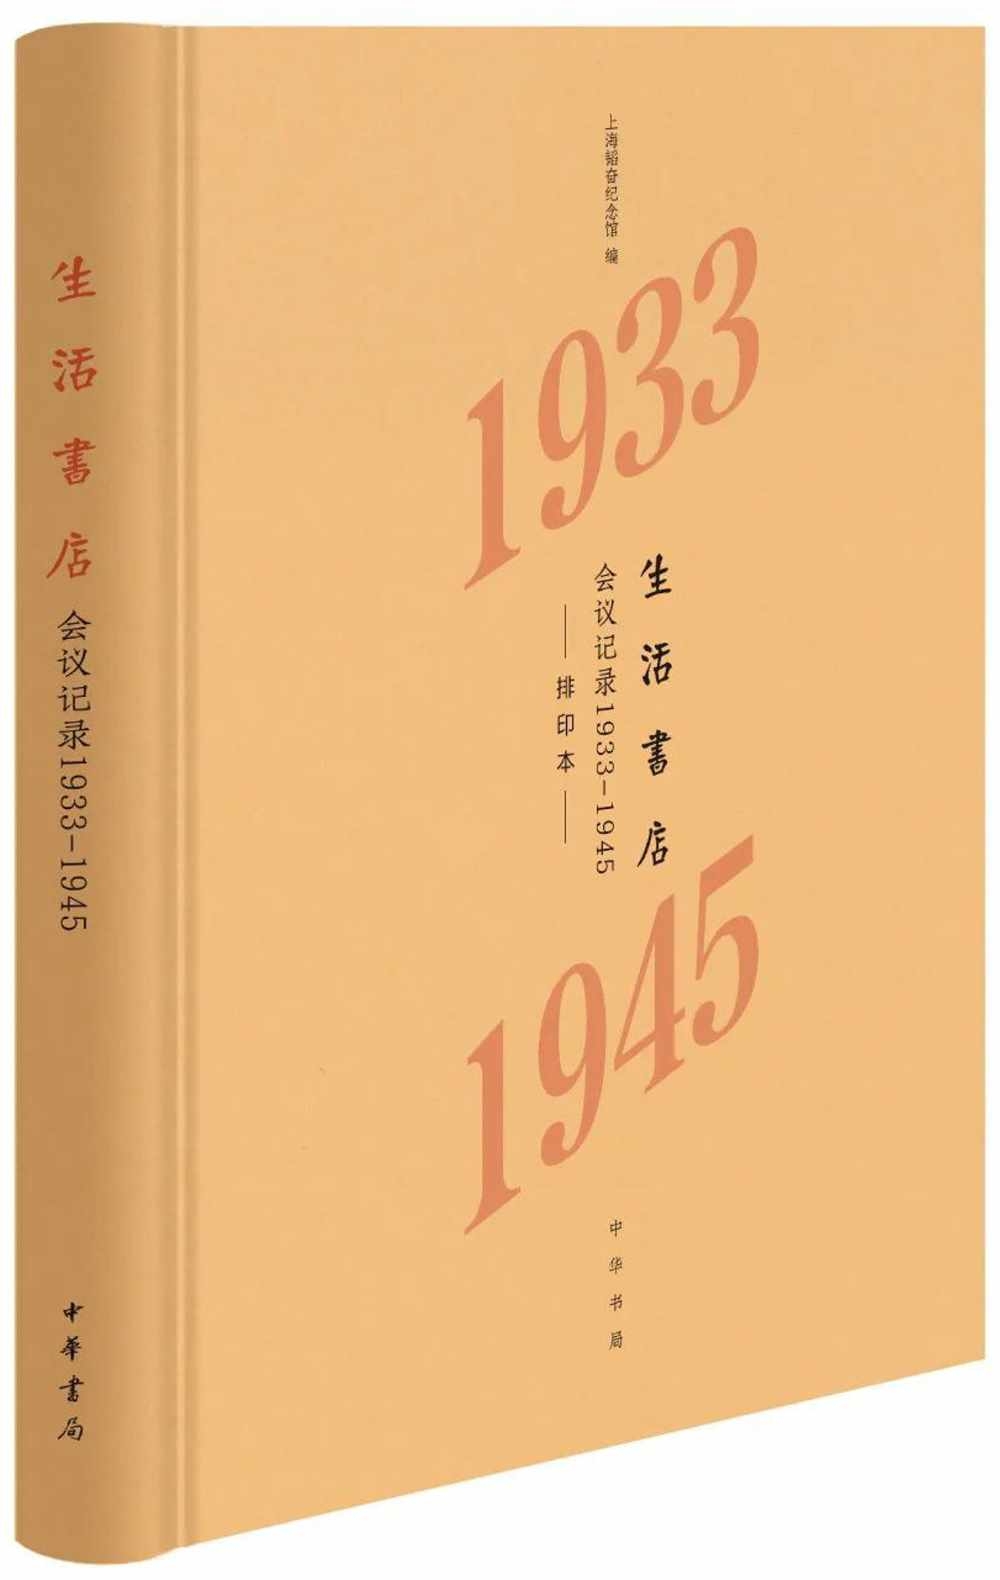 生活書店會議記錄1933-1945